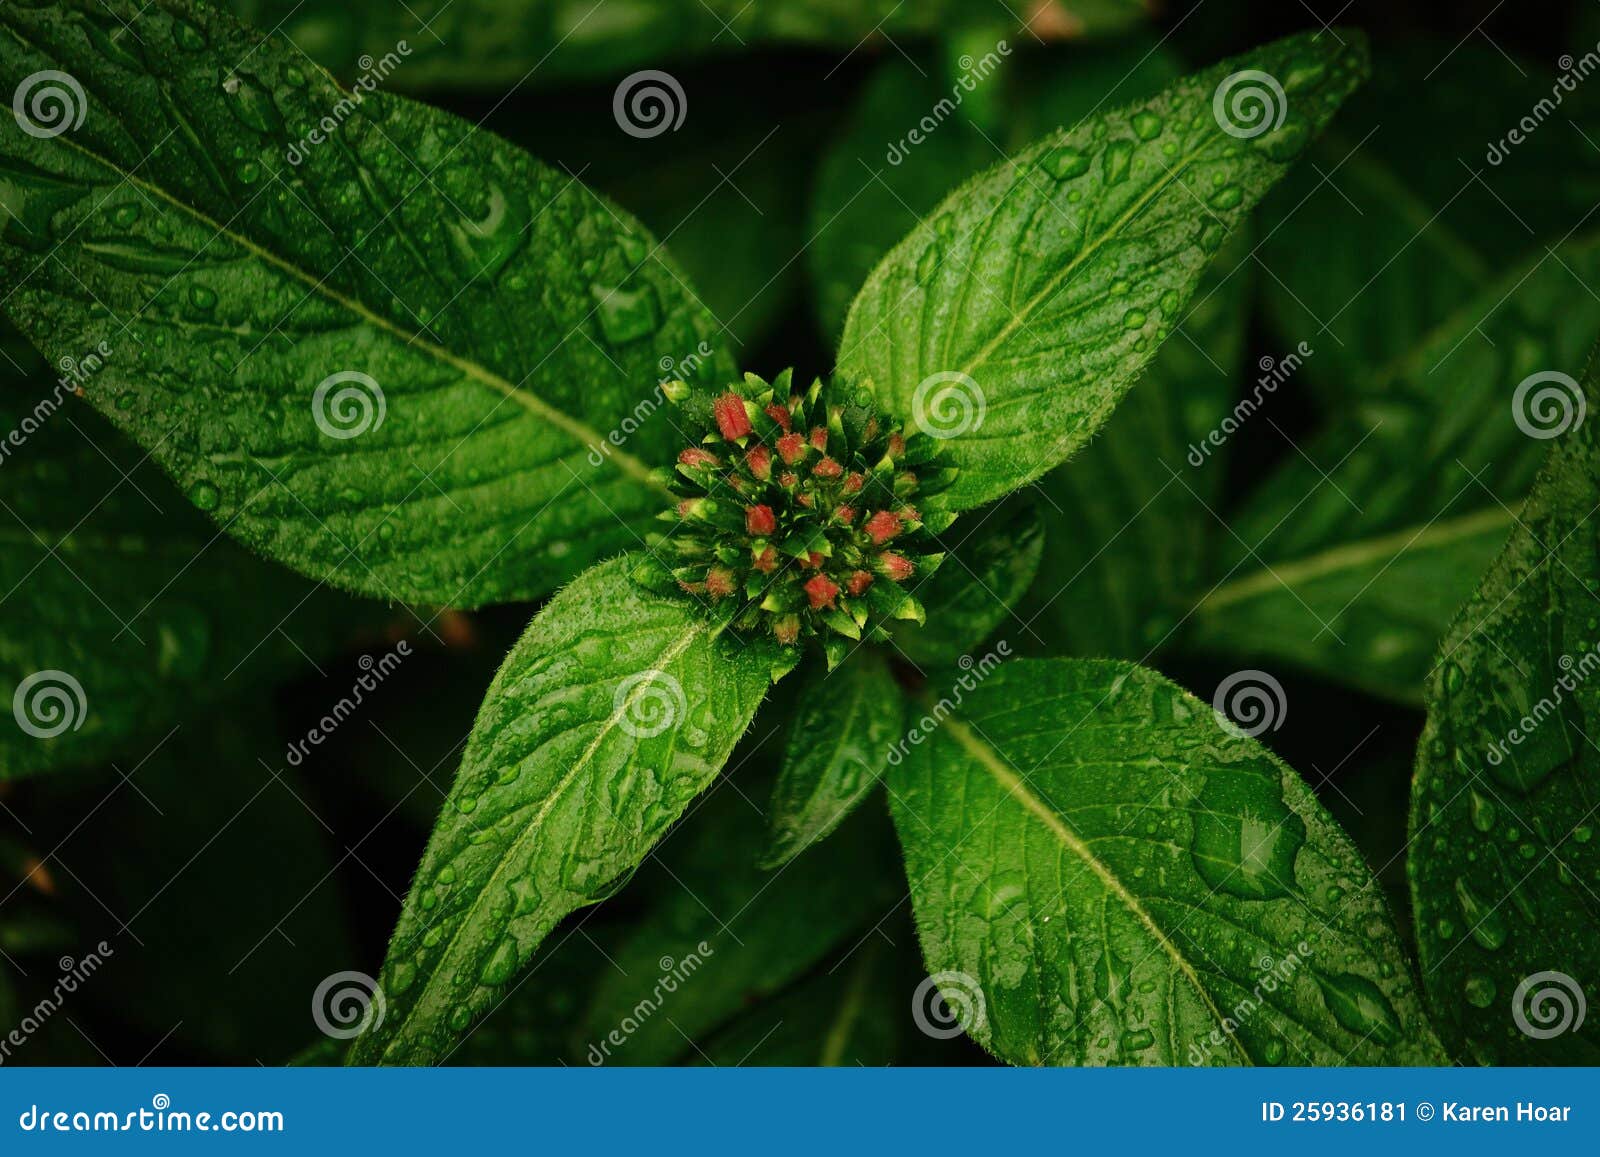 wet leaves of a flowering pentas plant